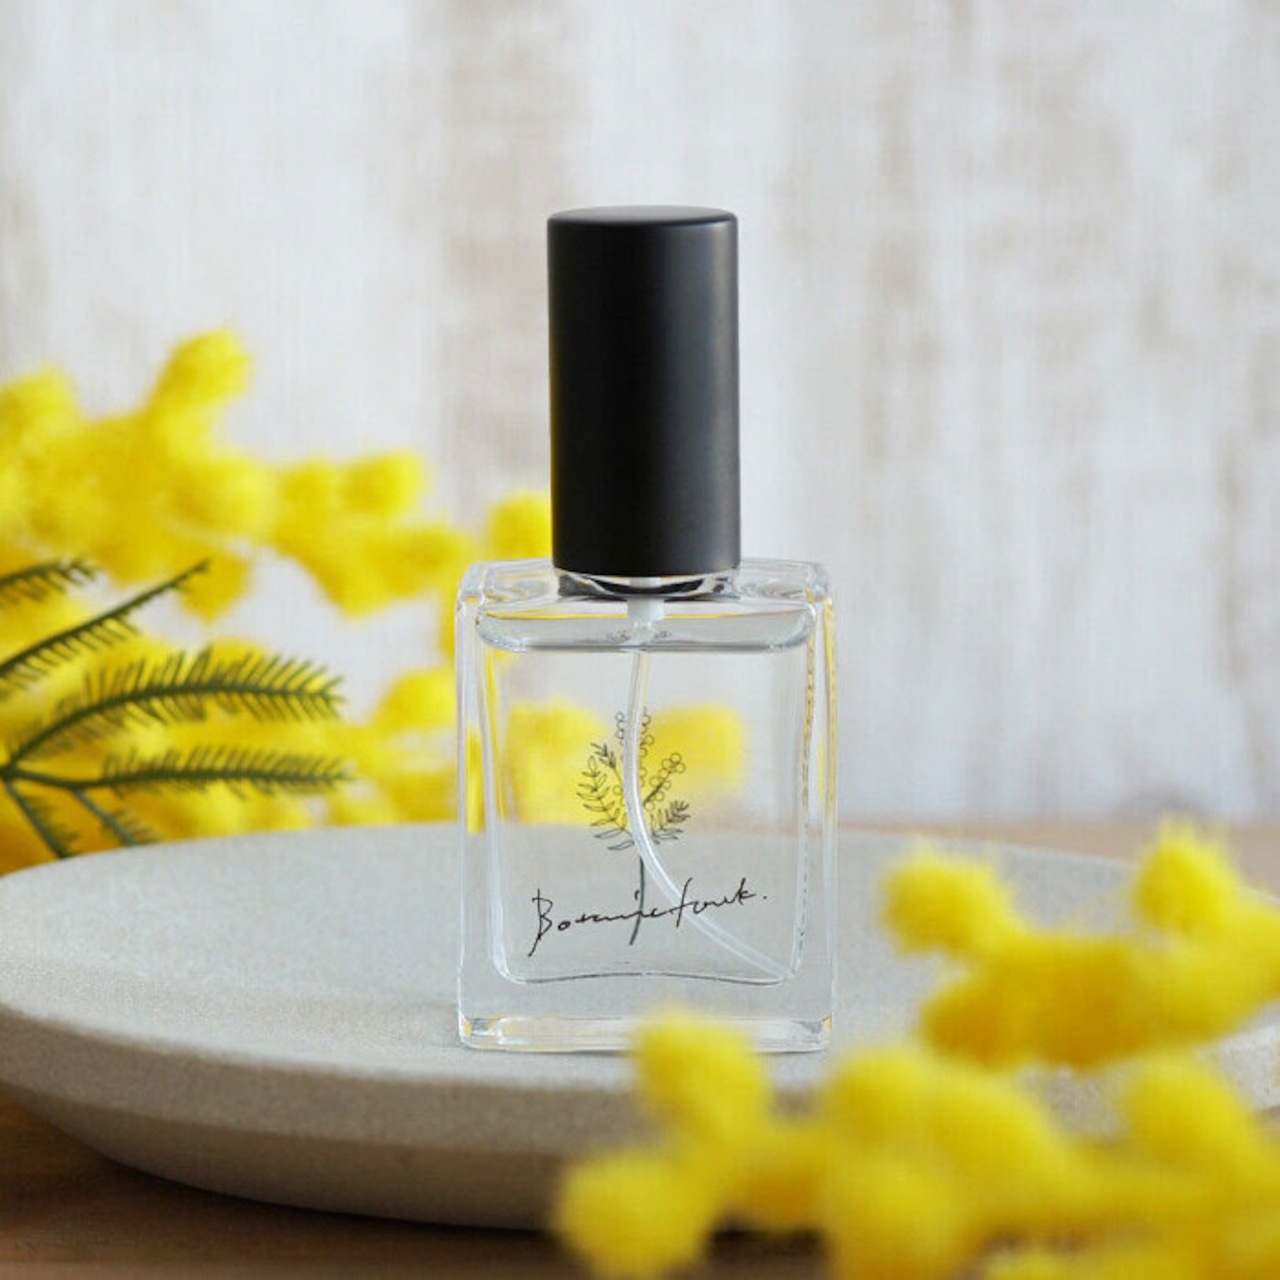 香水 ミモザ の香り フレグランスエビエール Botanicfolk 15ml コンパクト 携帯 いい香り アロマ かわいい プレゼント